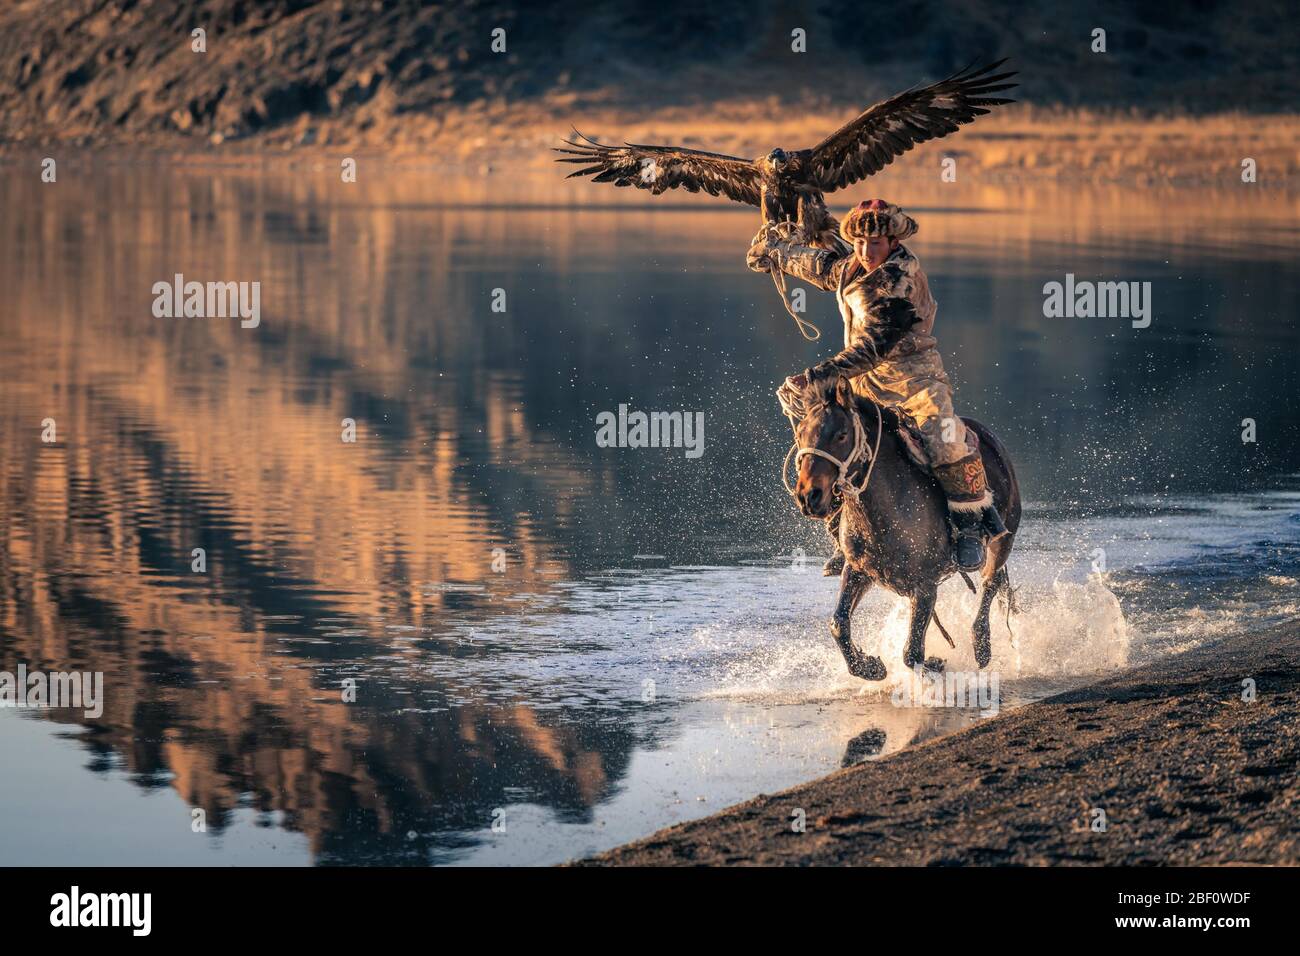 Chasseur d'aigles mongol, le kazakh monte à cheval à travers l'eau avec aigle formé, province de Bayan-Olgii, Mongolie Banque D'Images